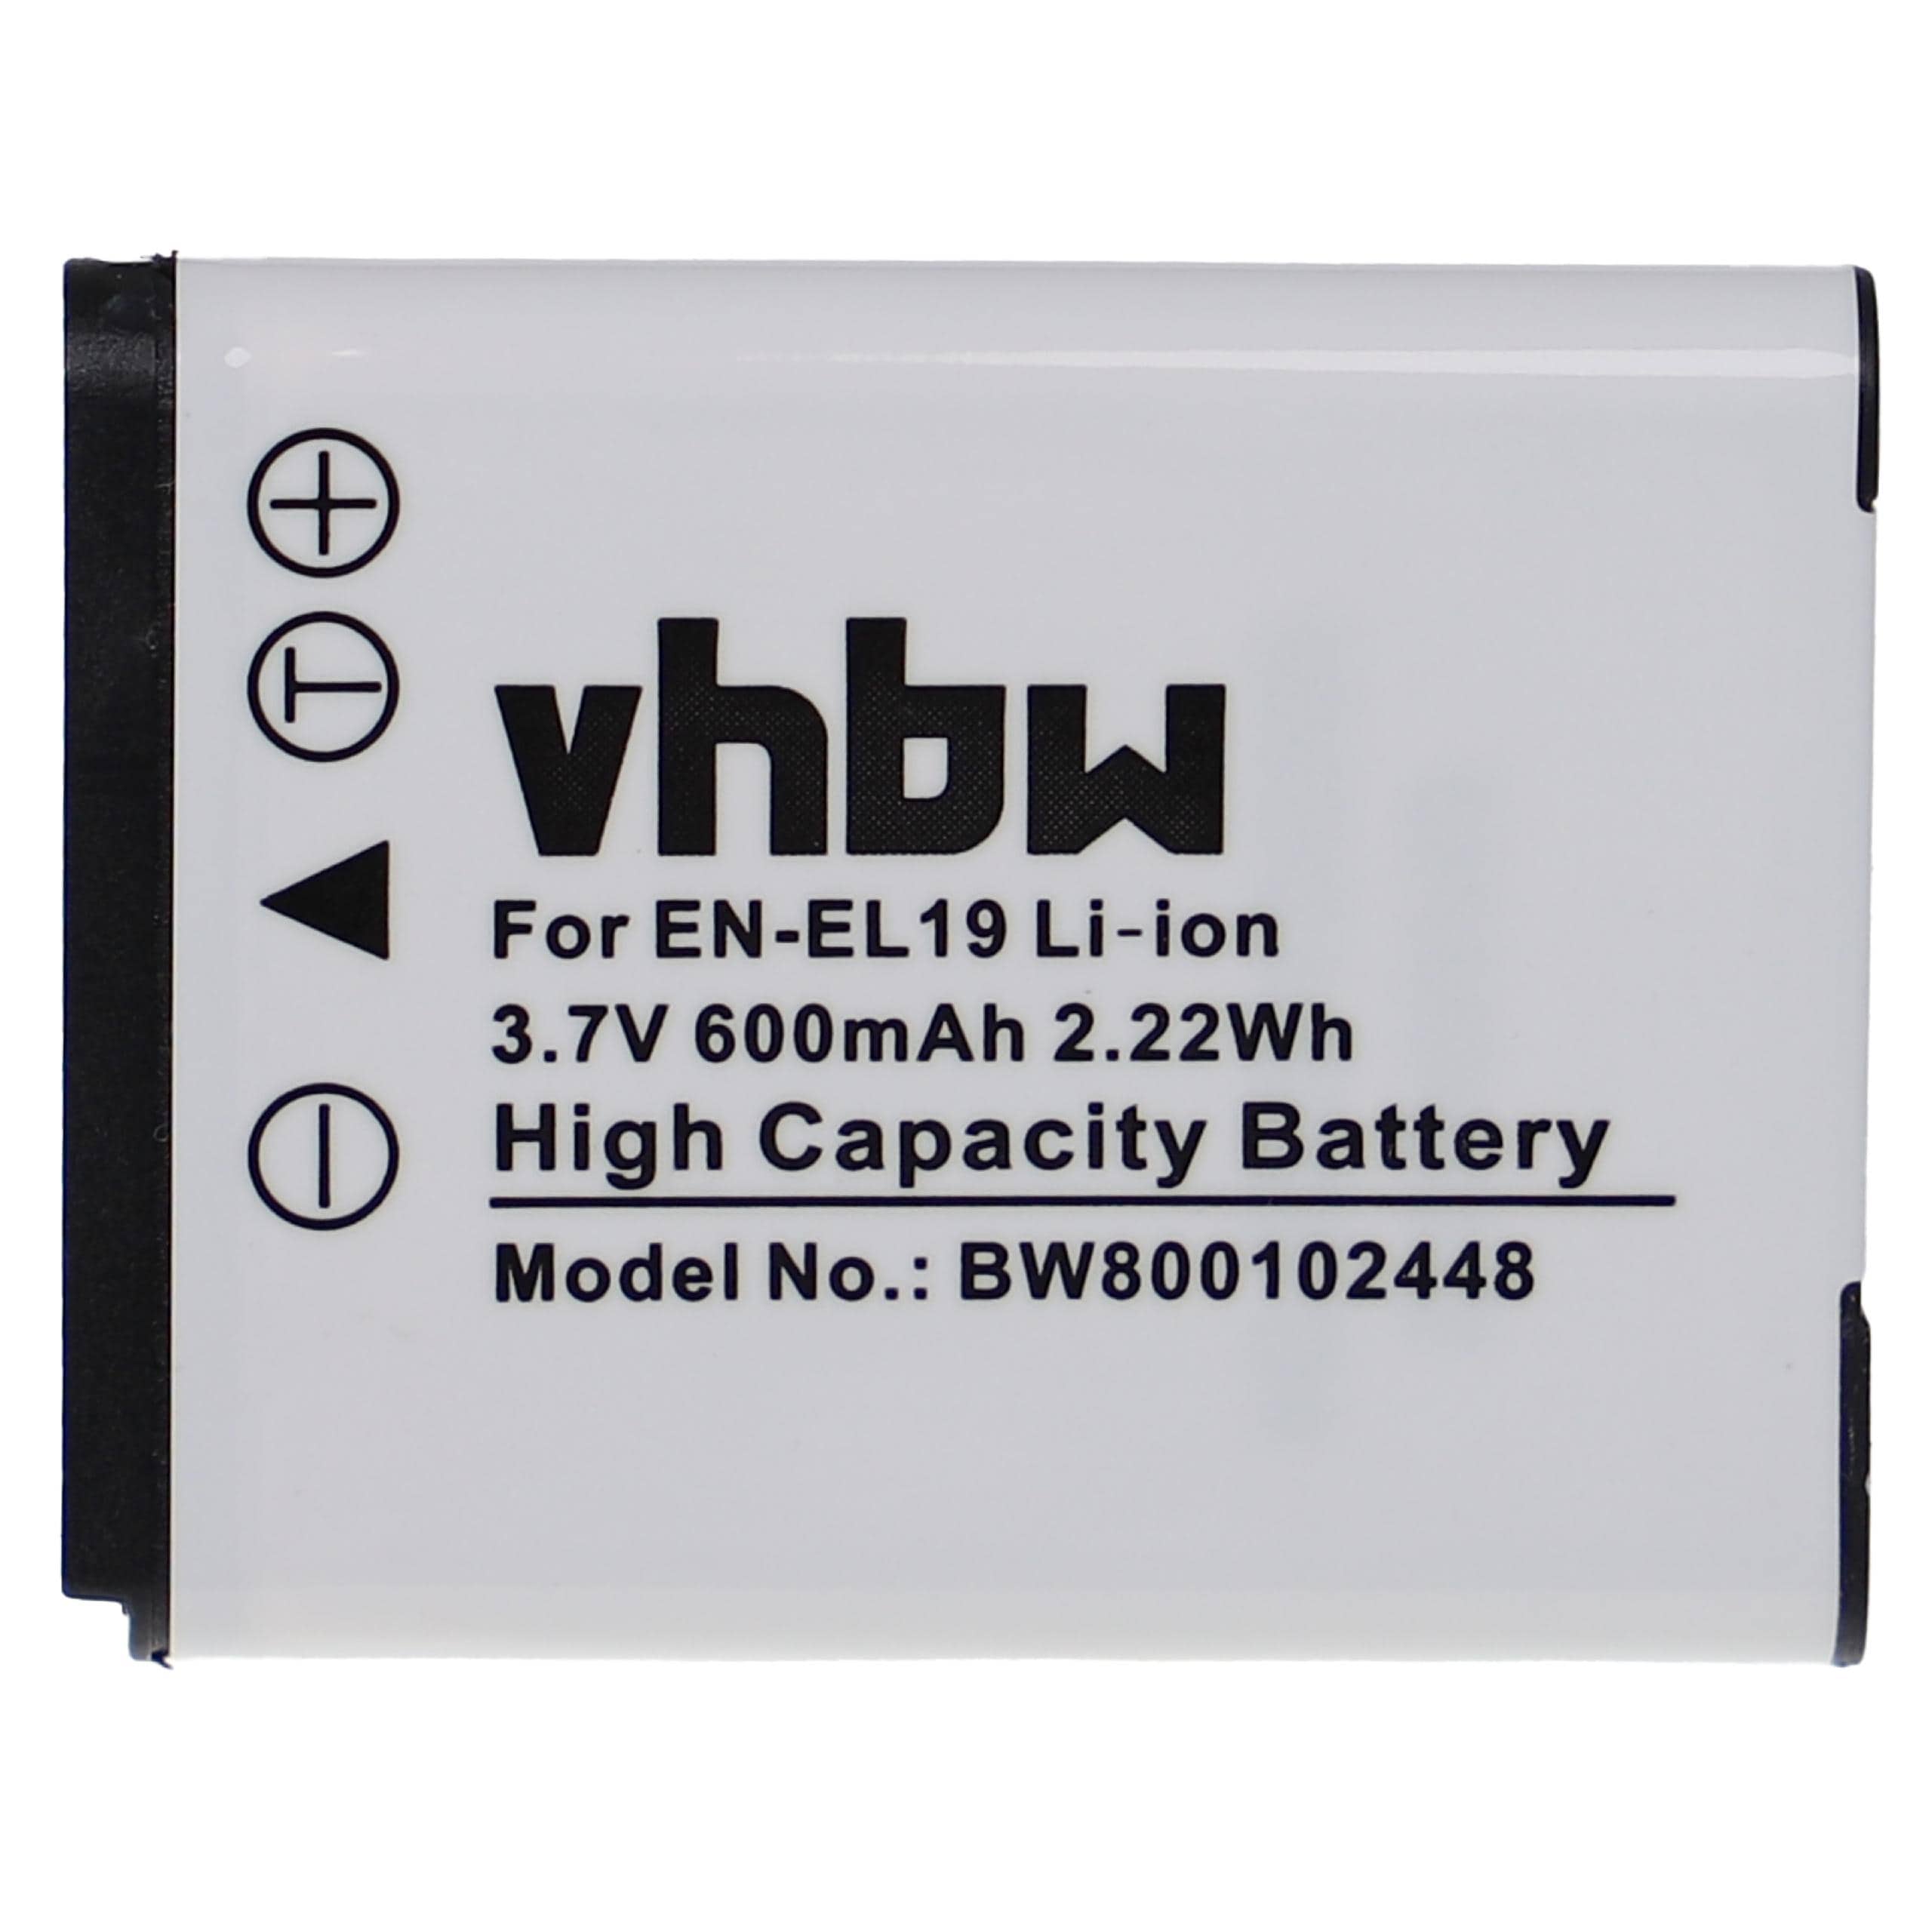 Battery Replacement for Nikon EN-EL19 - 600mAh, 3.7V, Li-Ion